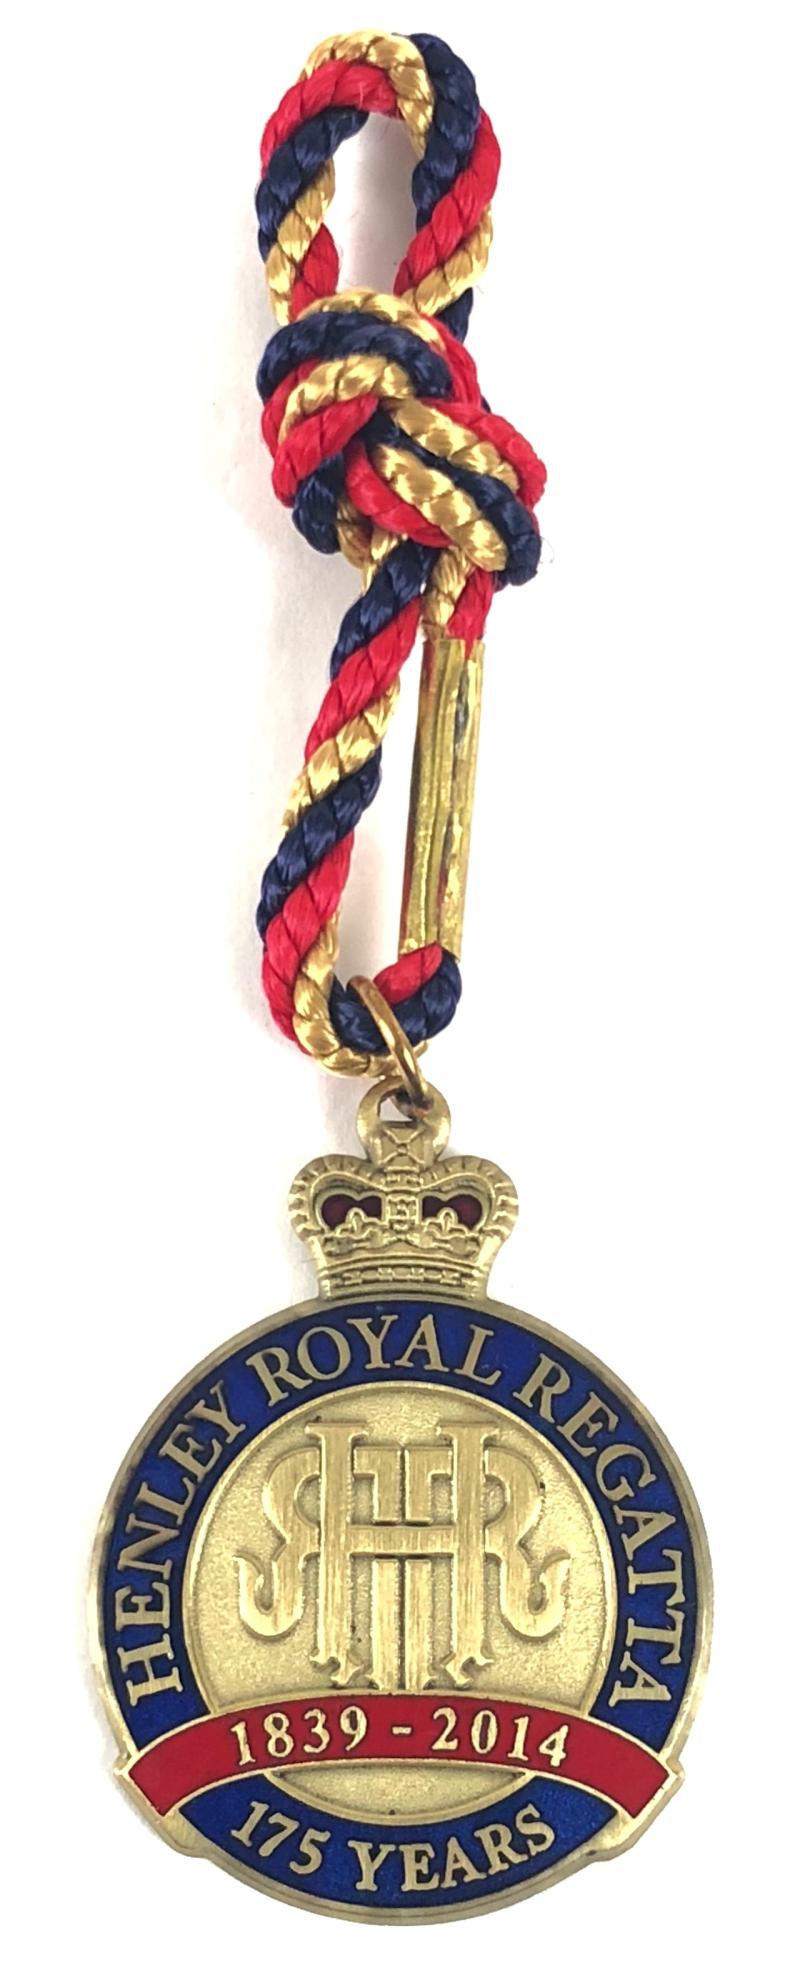 1839 - 2014 Henley Royal Regatta stewards enclosure commemorative badge